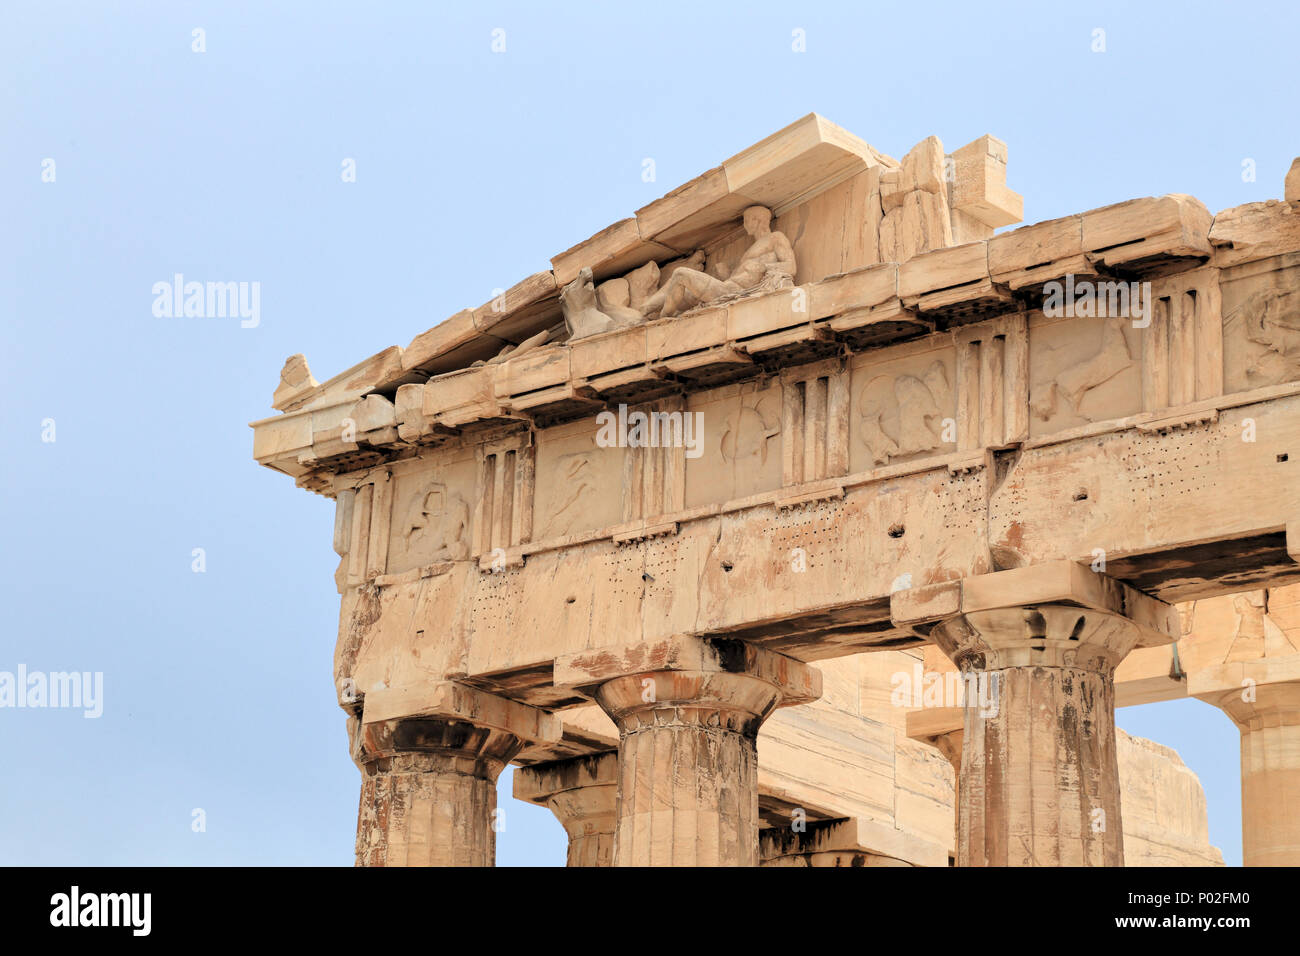 Parthenon temple, Acropolis of Athens, Ancient Greece Stock Photo